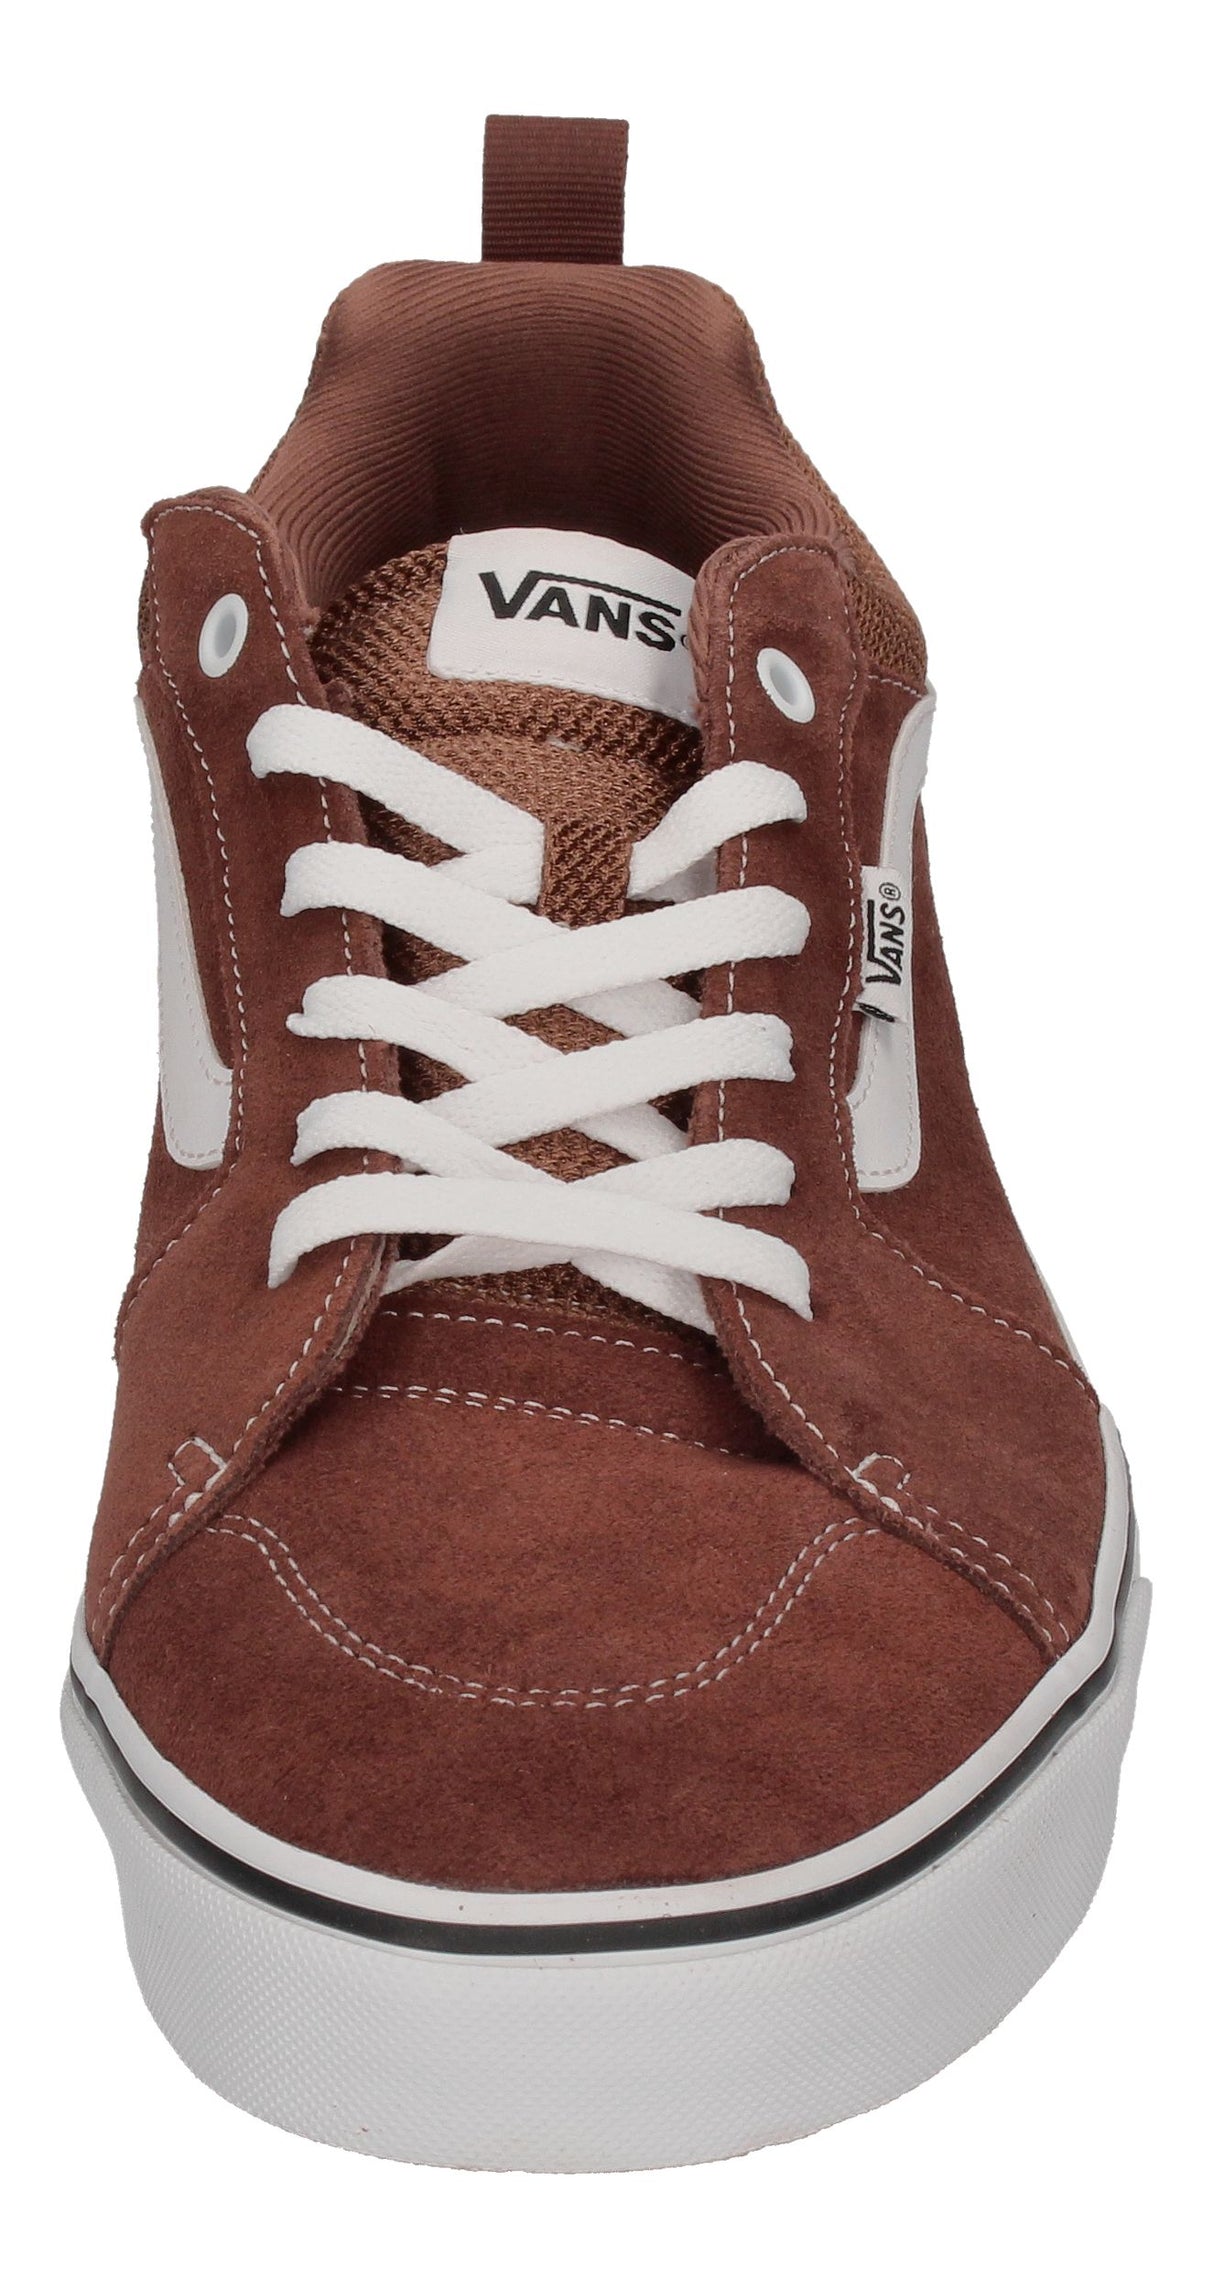 Vans Filmore Sidewall Shoes Brown